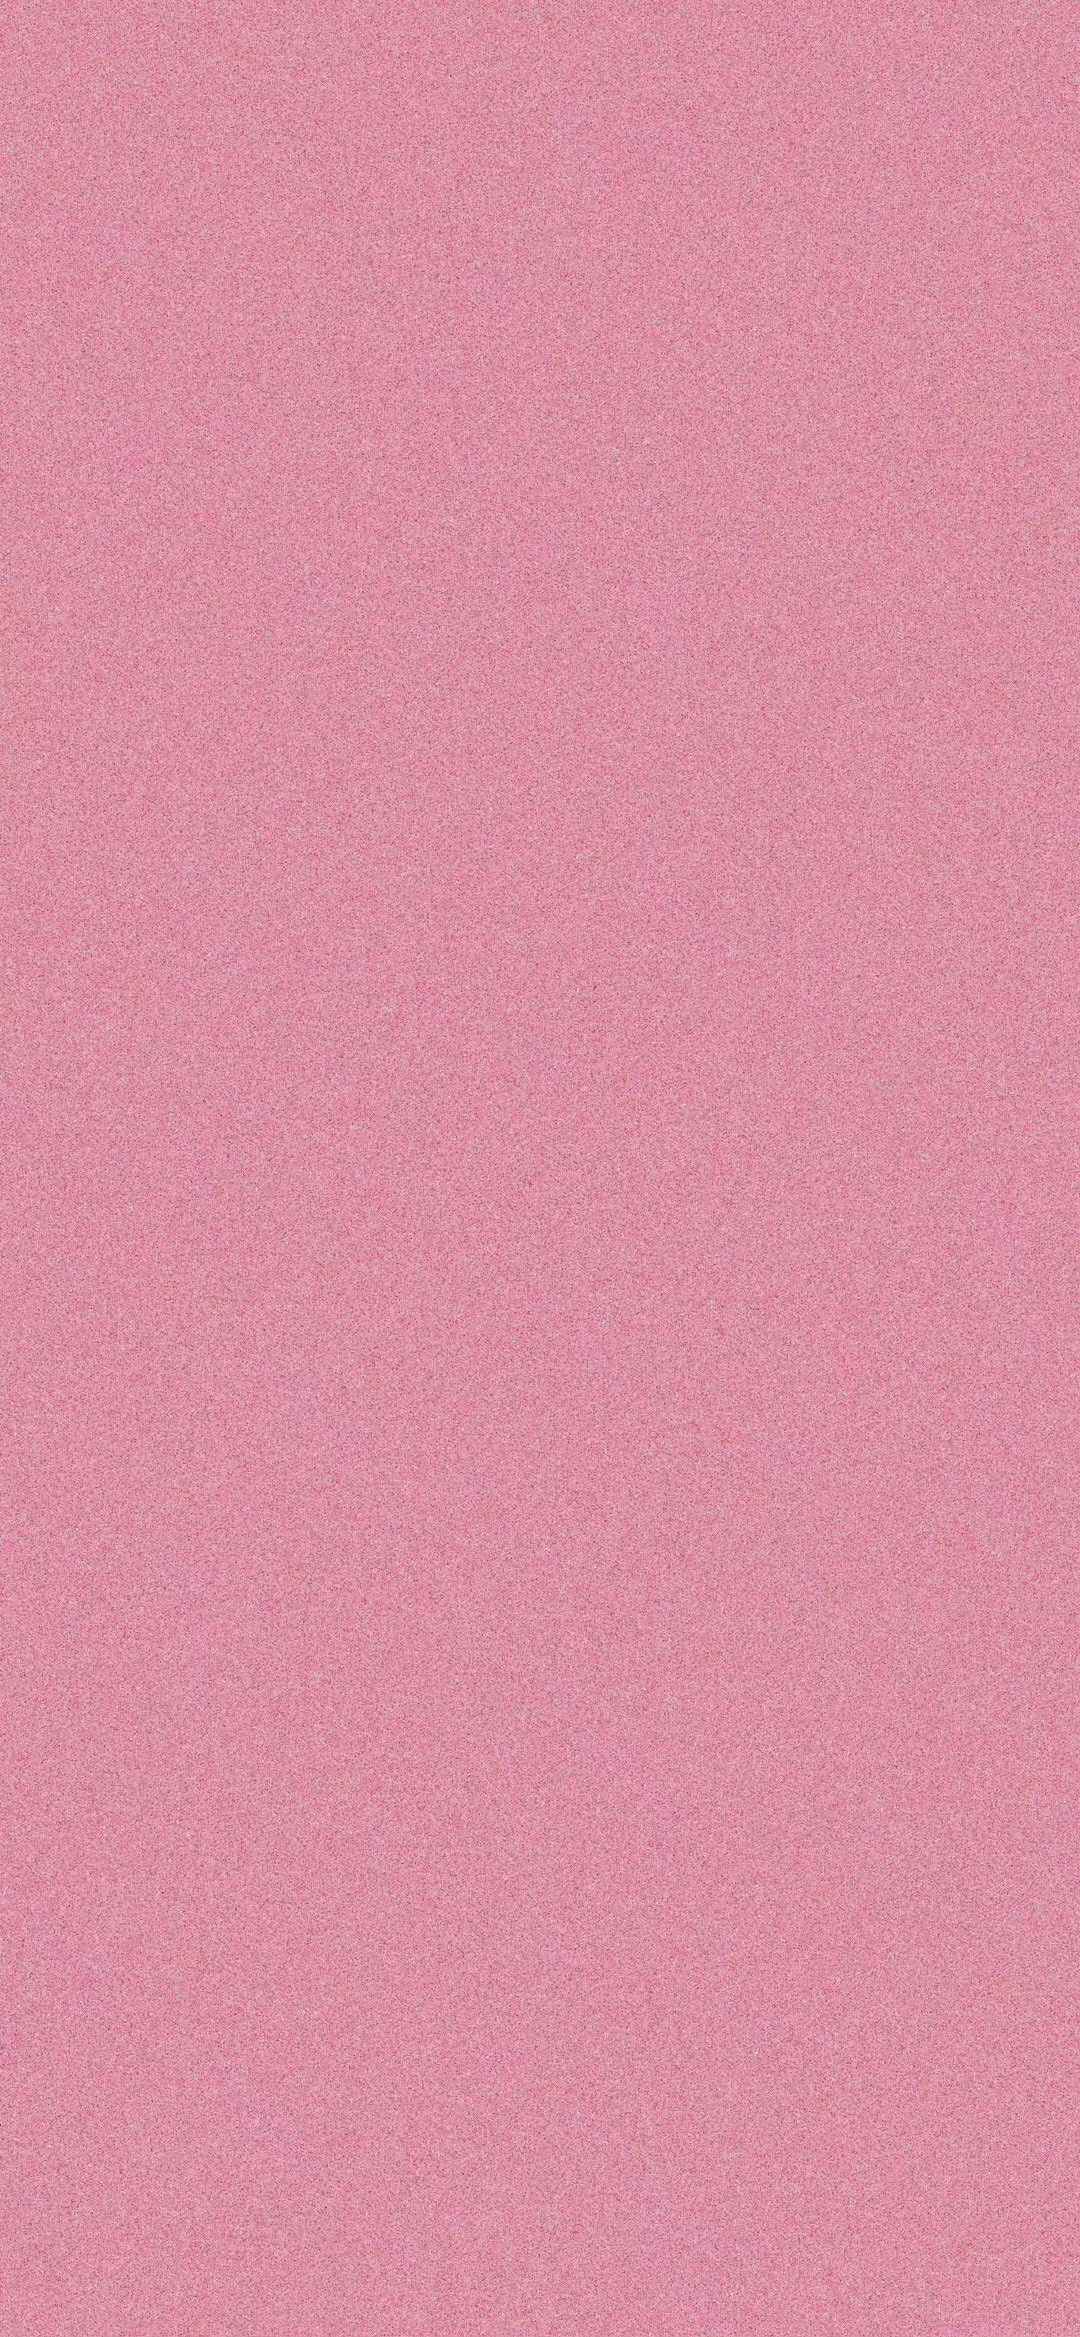 轻磨砂质感的纯粉色高清壁纸-